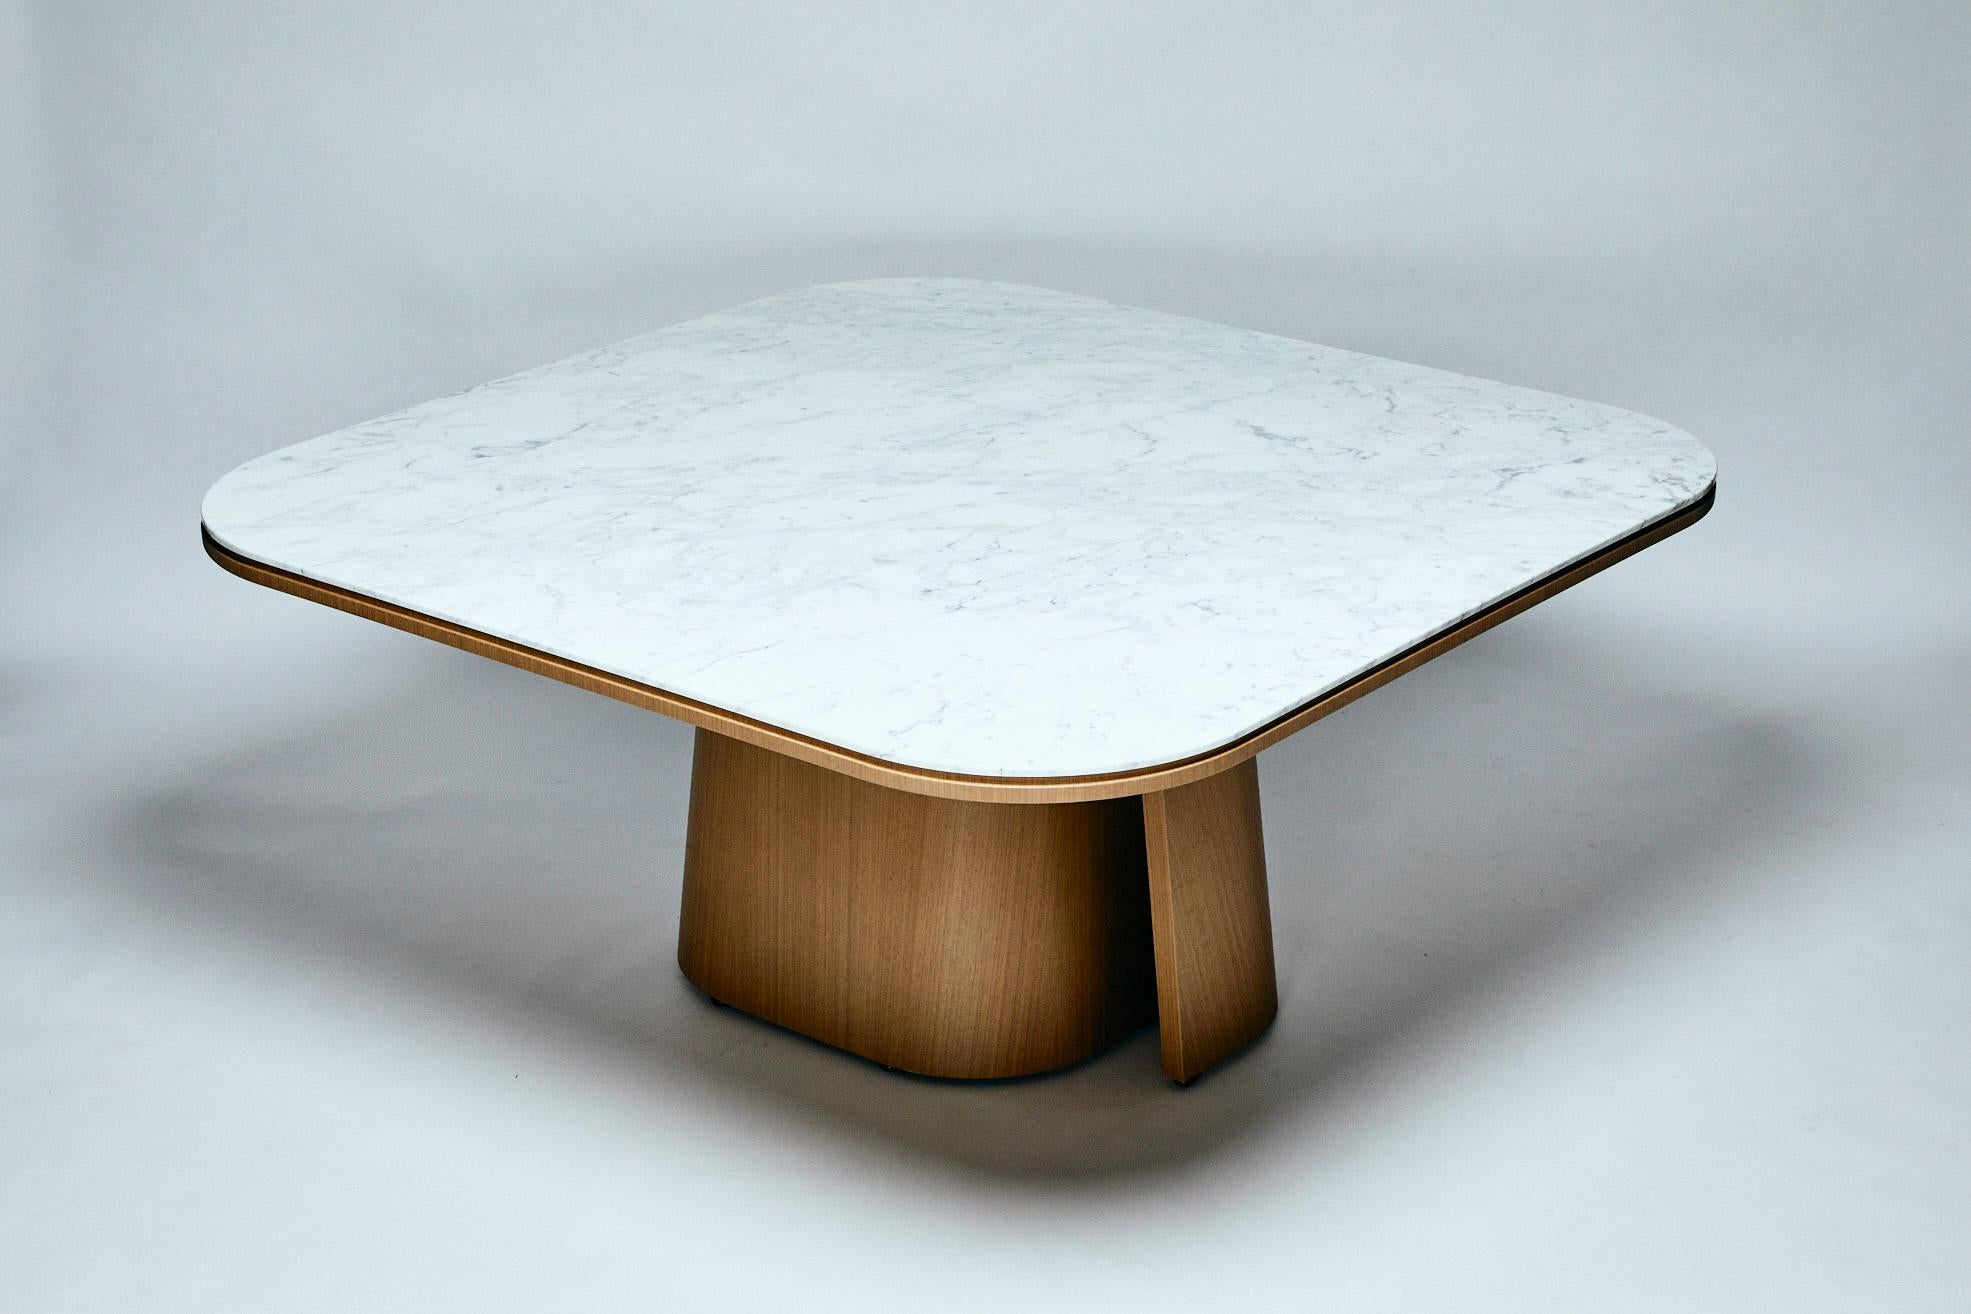 Der Tisch OOMA spiegelt die Suche von Reda Amalou nach einem perfekten Gleichgewicht zwischen einer reinen Linie und der Liebe zum Detail wider. Die Proportionen der sehr dünnen, eleganten Marmorplatte mit ihren subtilen Kanten kontrastieren mit den